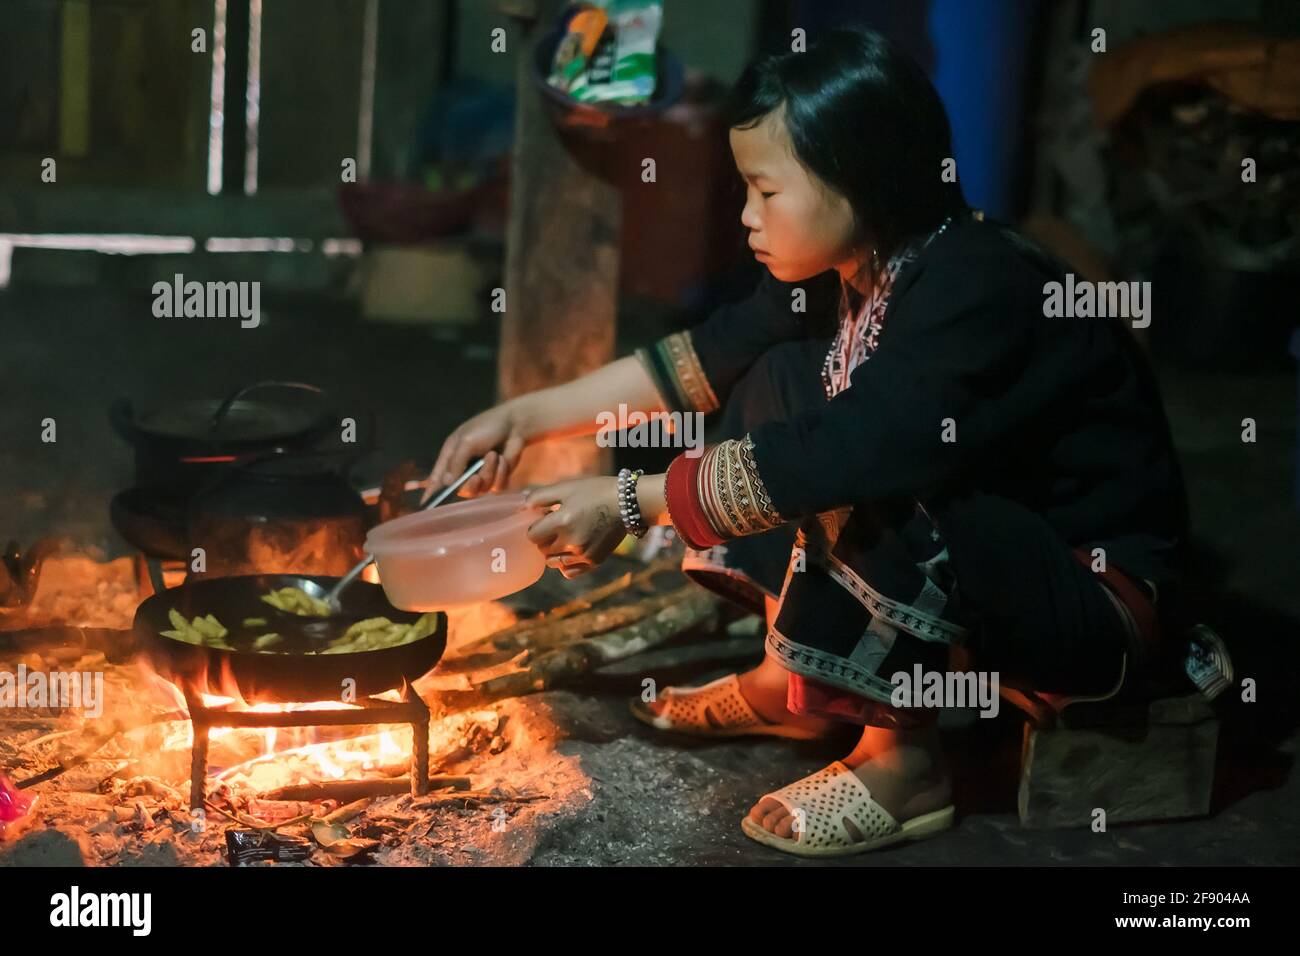 Sapa, Vietnam - avril 14: Hmong, femme de la minorité ethnique dans des vêtements traditionnels cuisant de la nourriture sur le feu à la maison. Banque D'Images